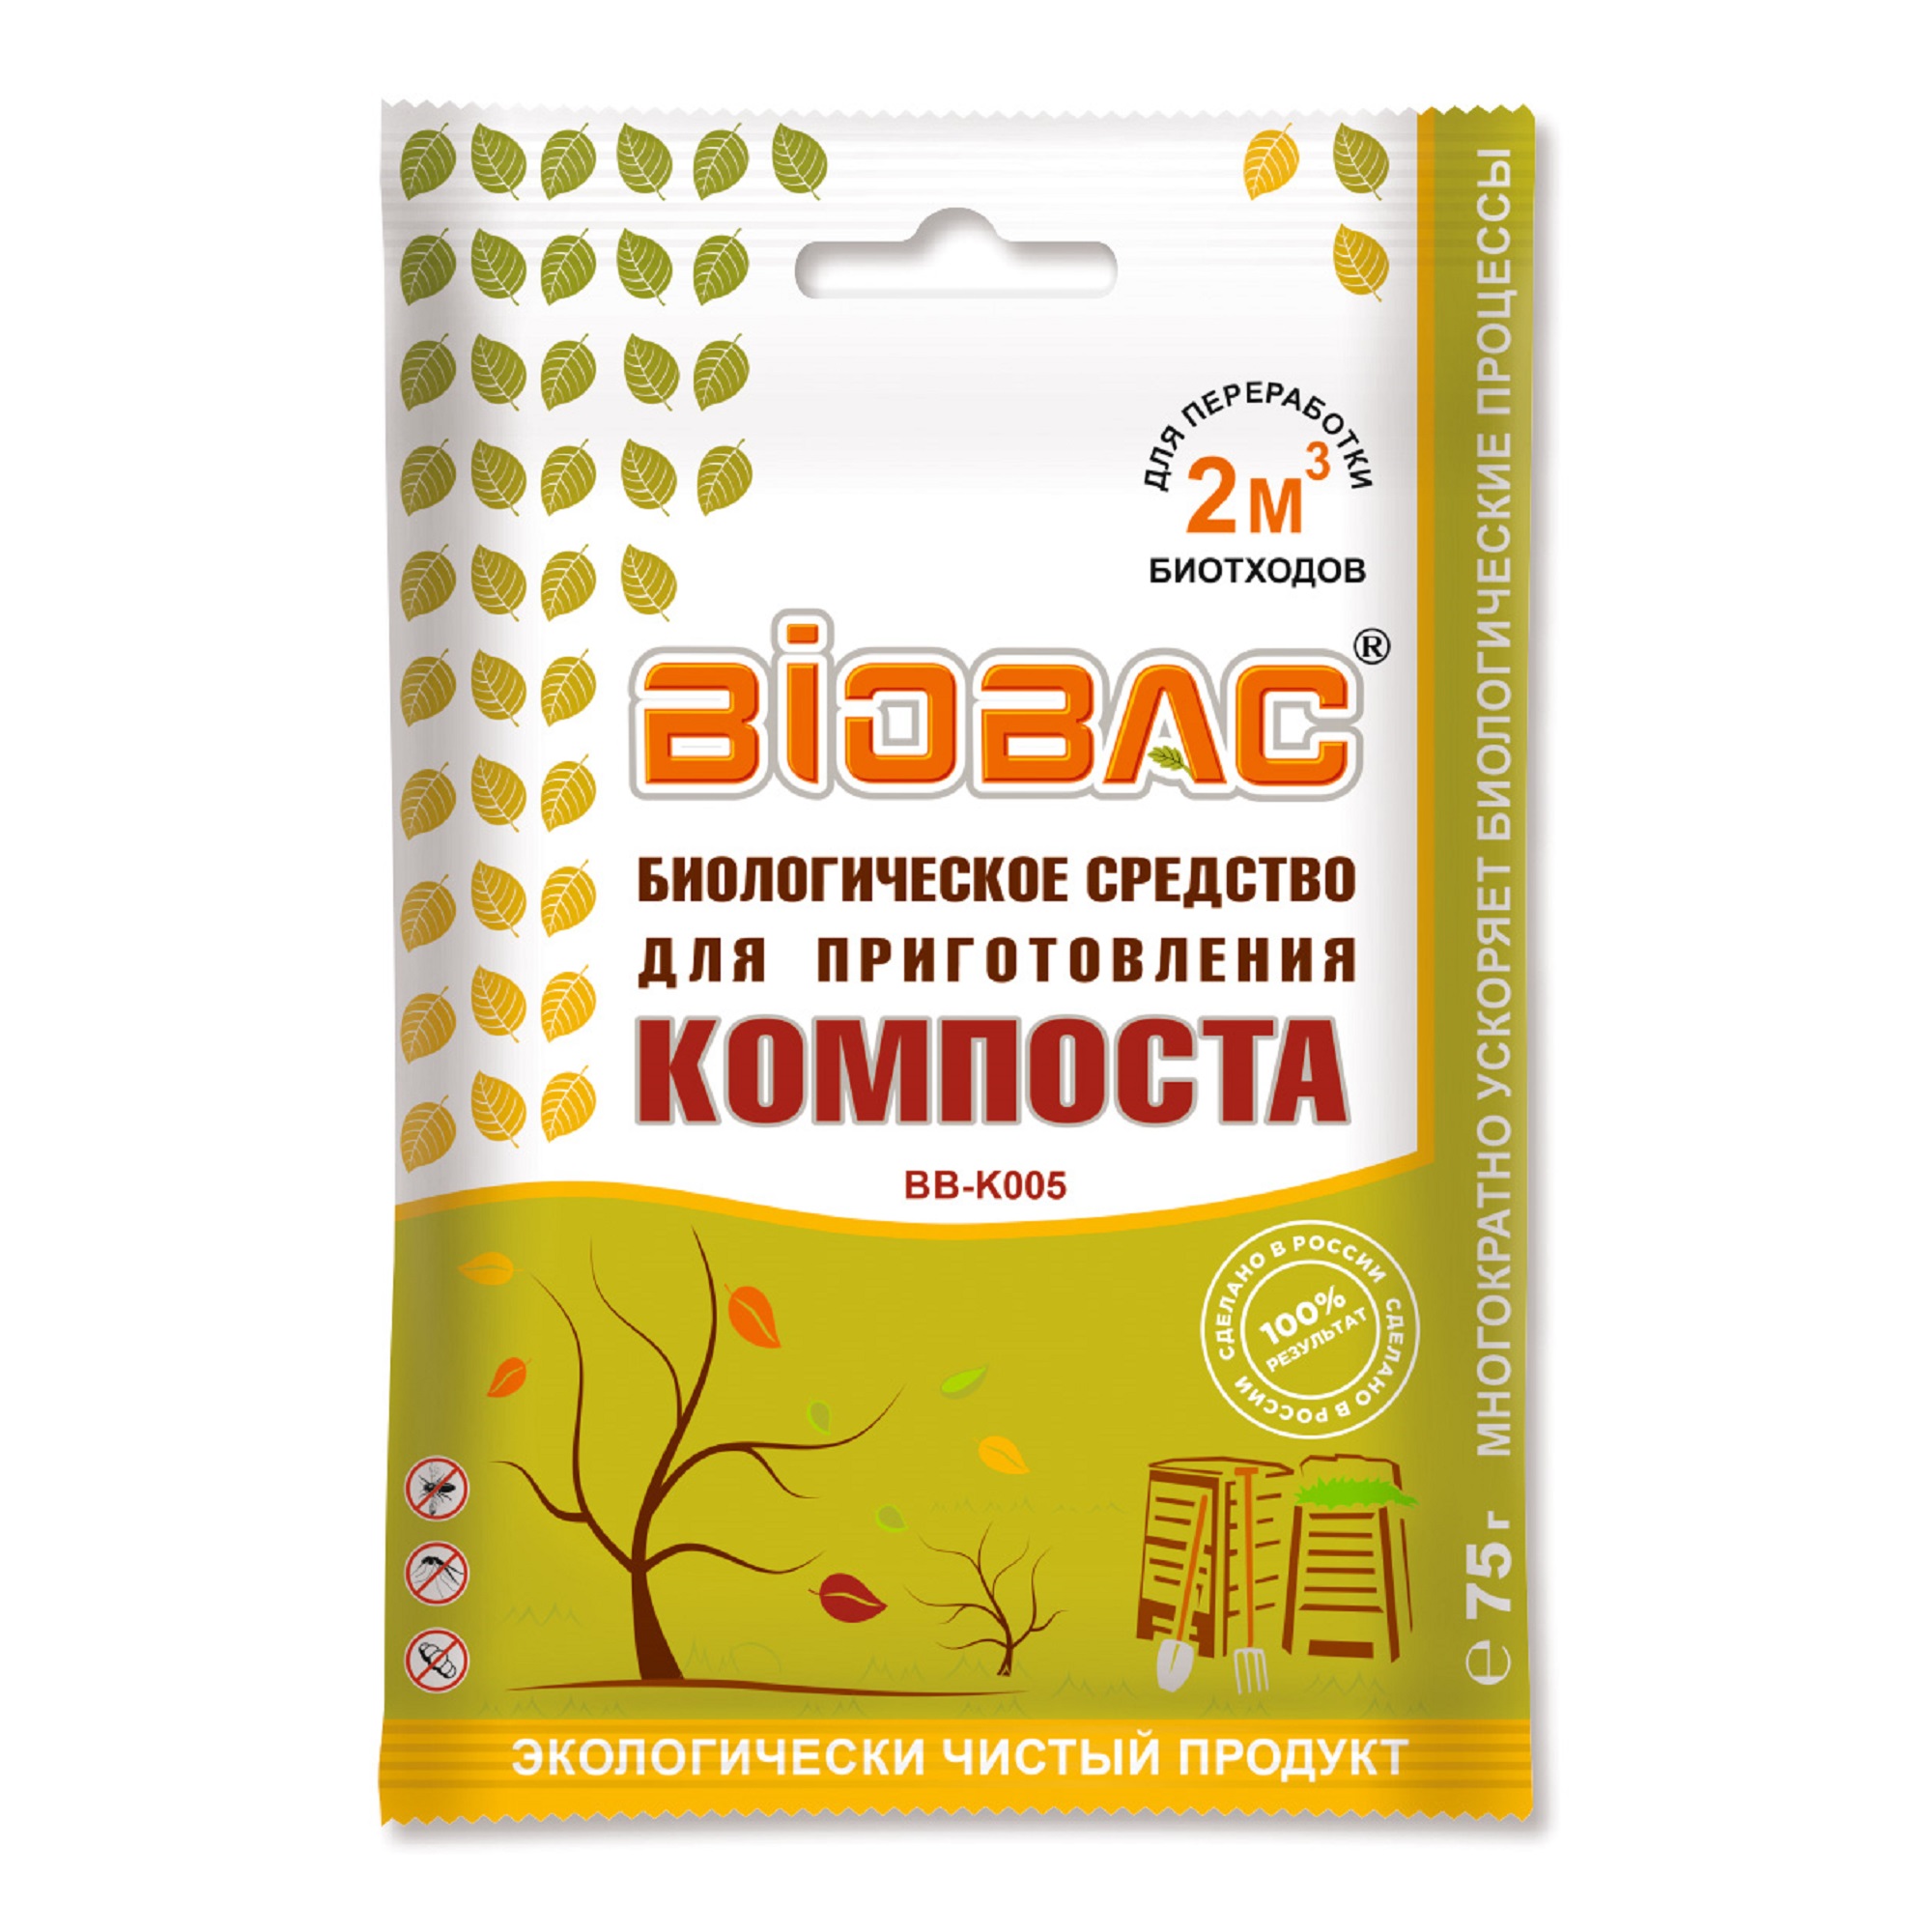 Средство для приготовления компоста BB-K005 биологическое средство для приготовления компоста biobac